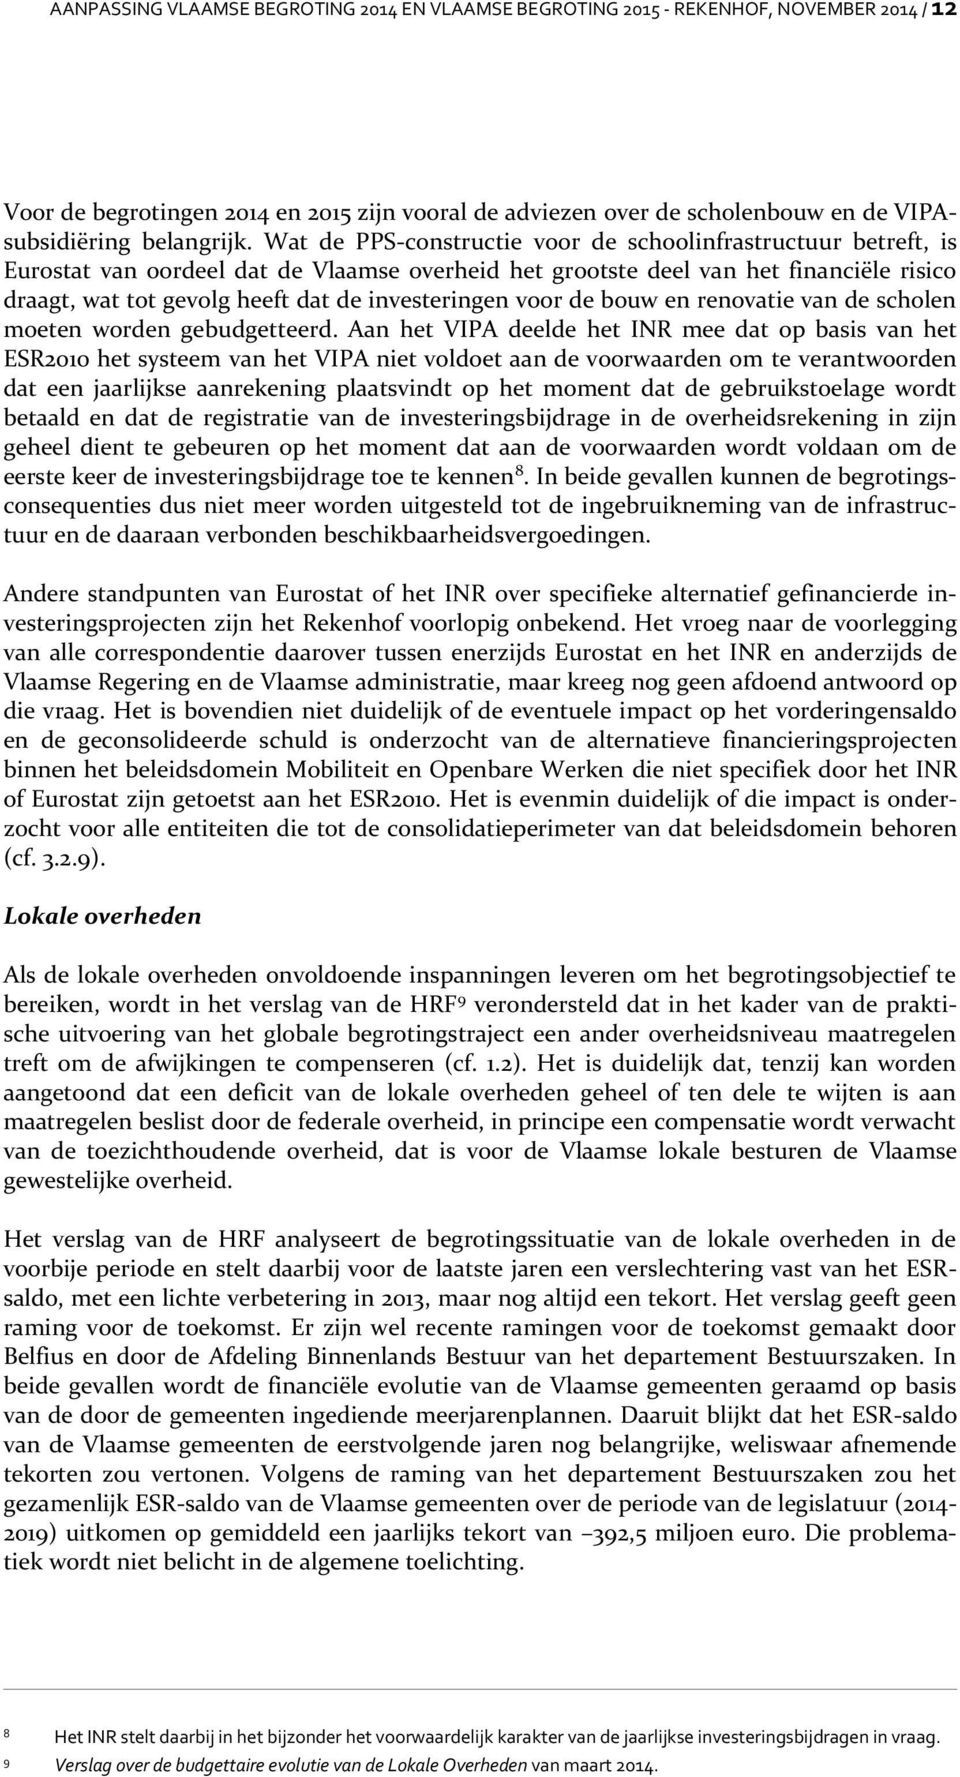 Wat de PPS-constructie voor de schoolinfrastructuur betreft, is Eurostat van oordeel dat de Vlaamse overheid het grootste deel van het financiële risico draagt, wat tot gevolg heeft dat de